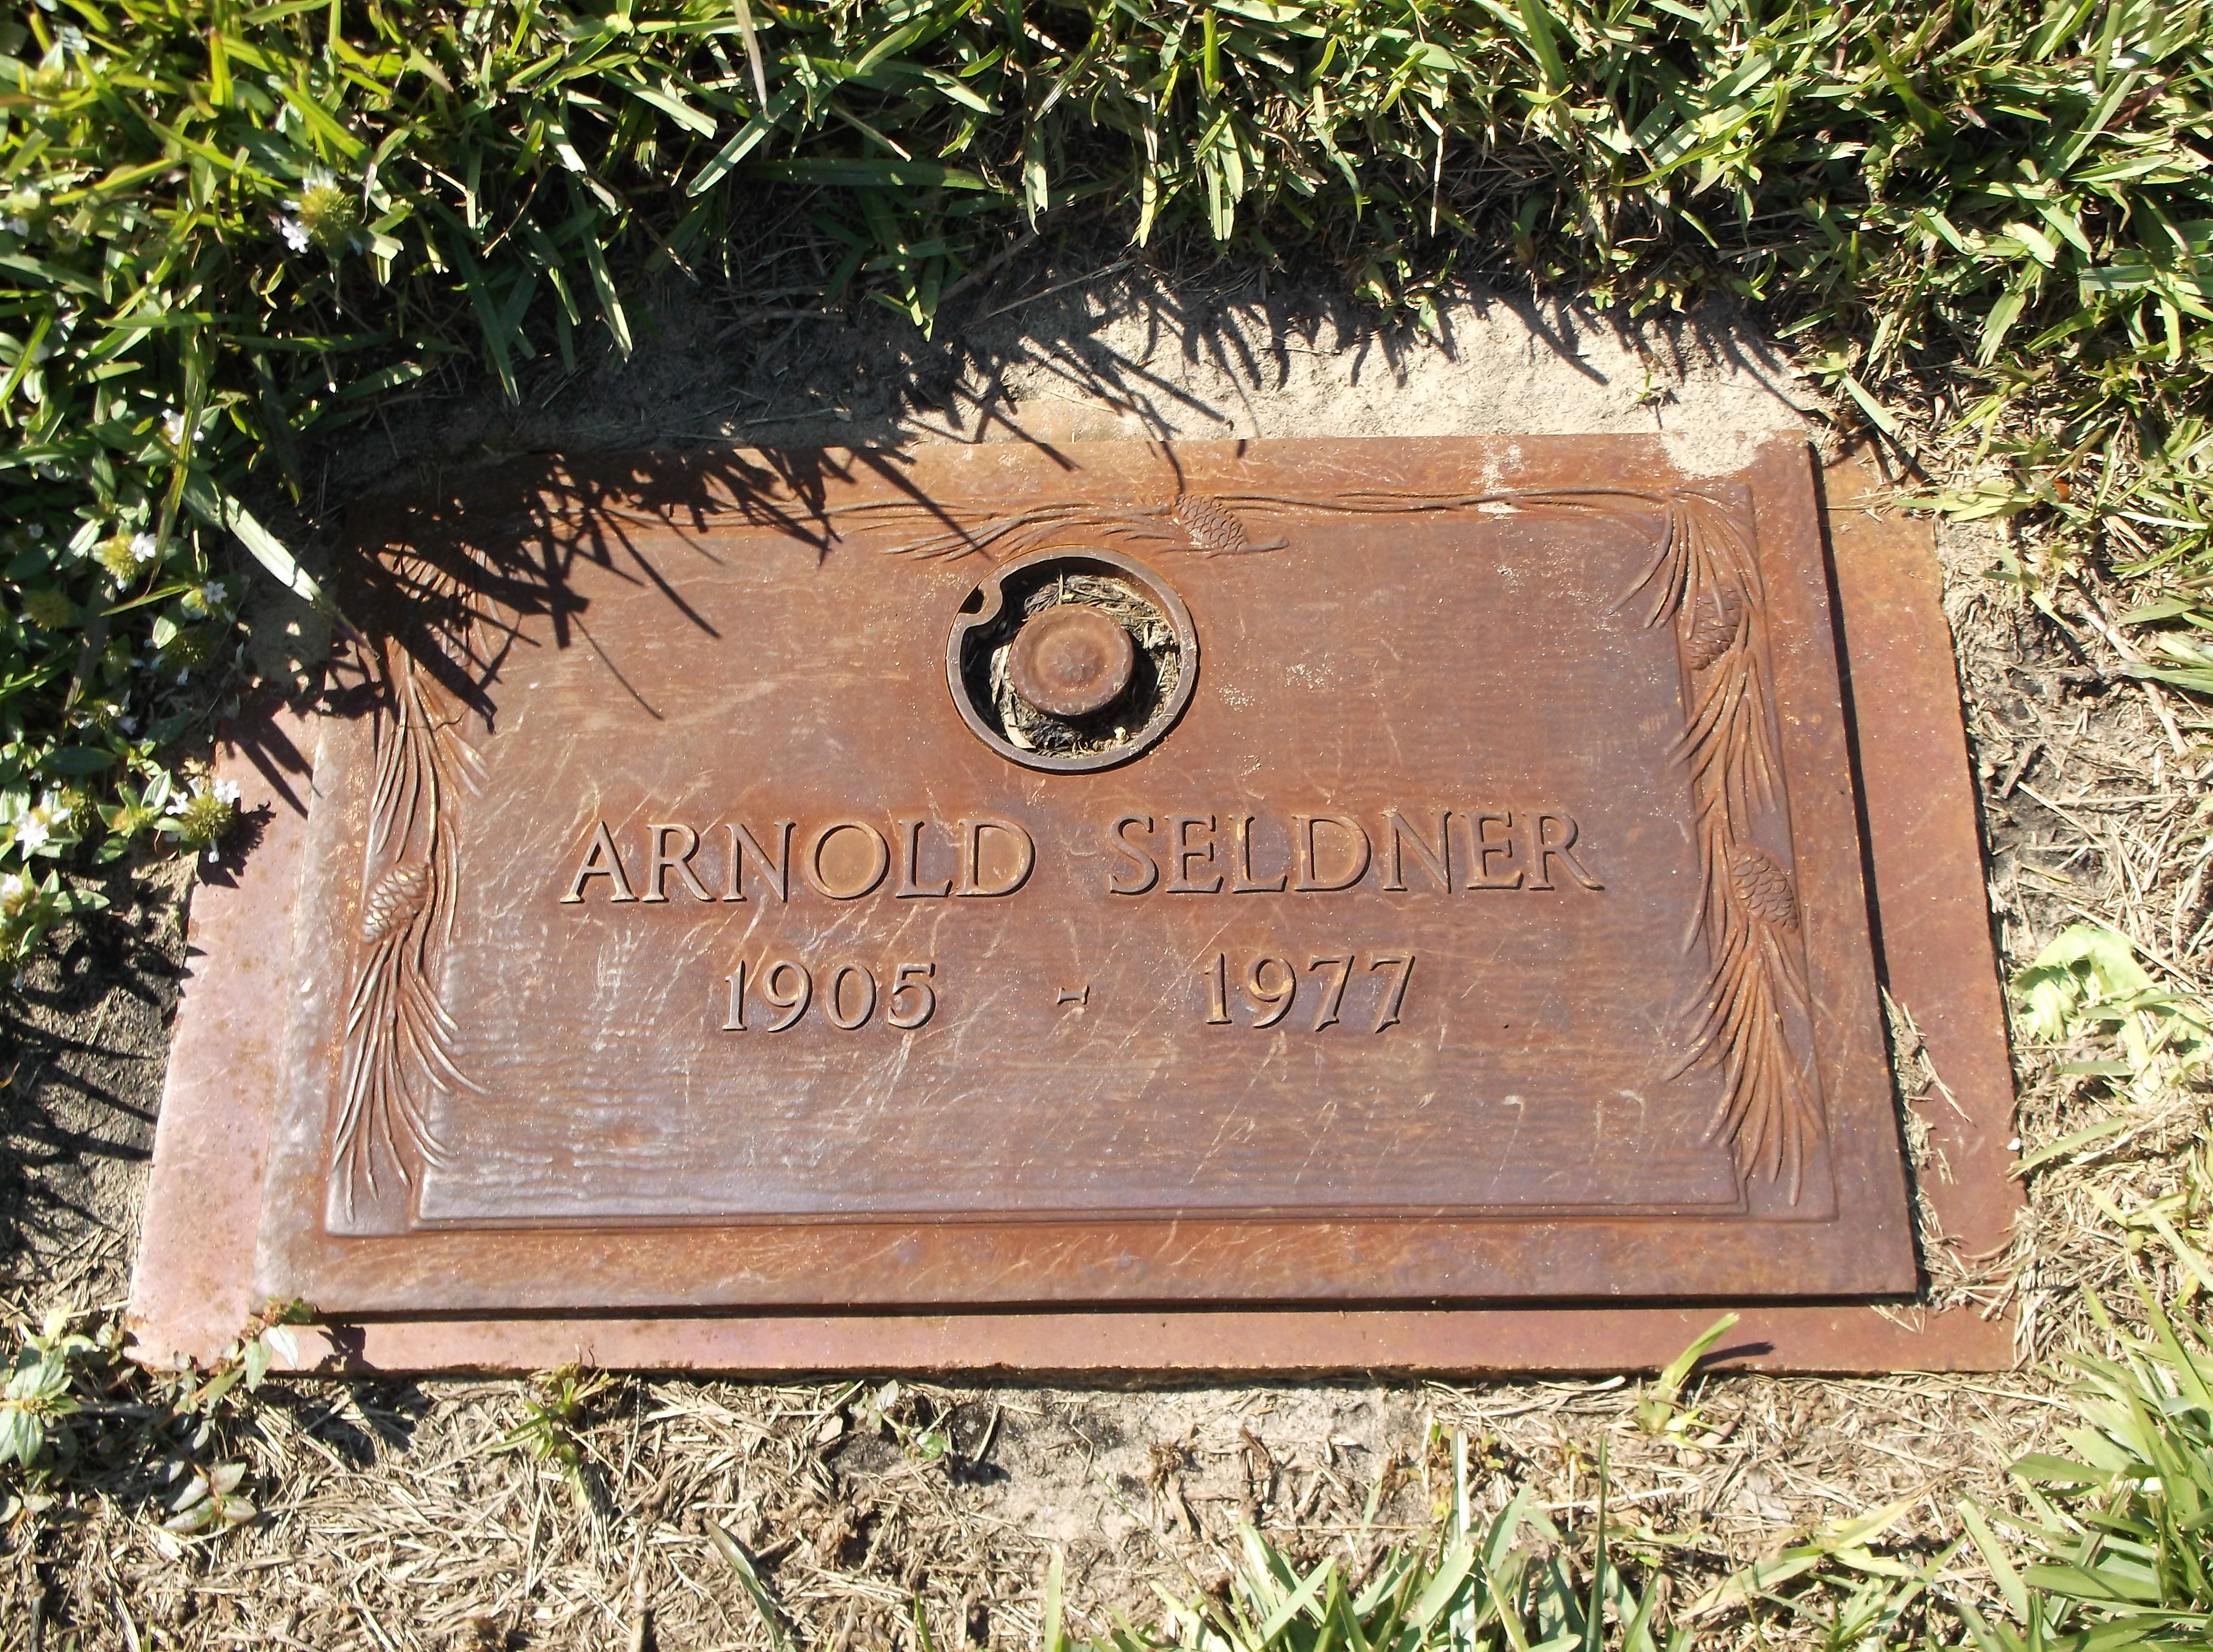 Arnold Seldner